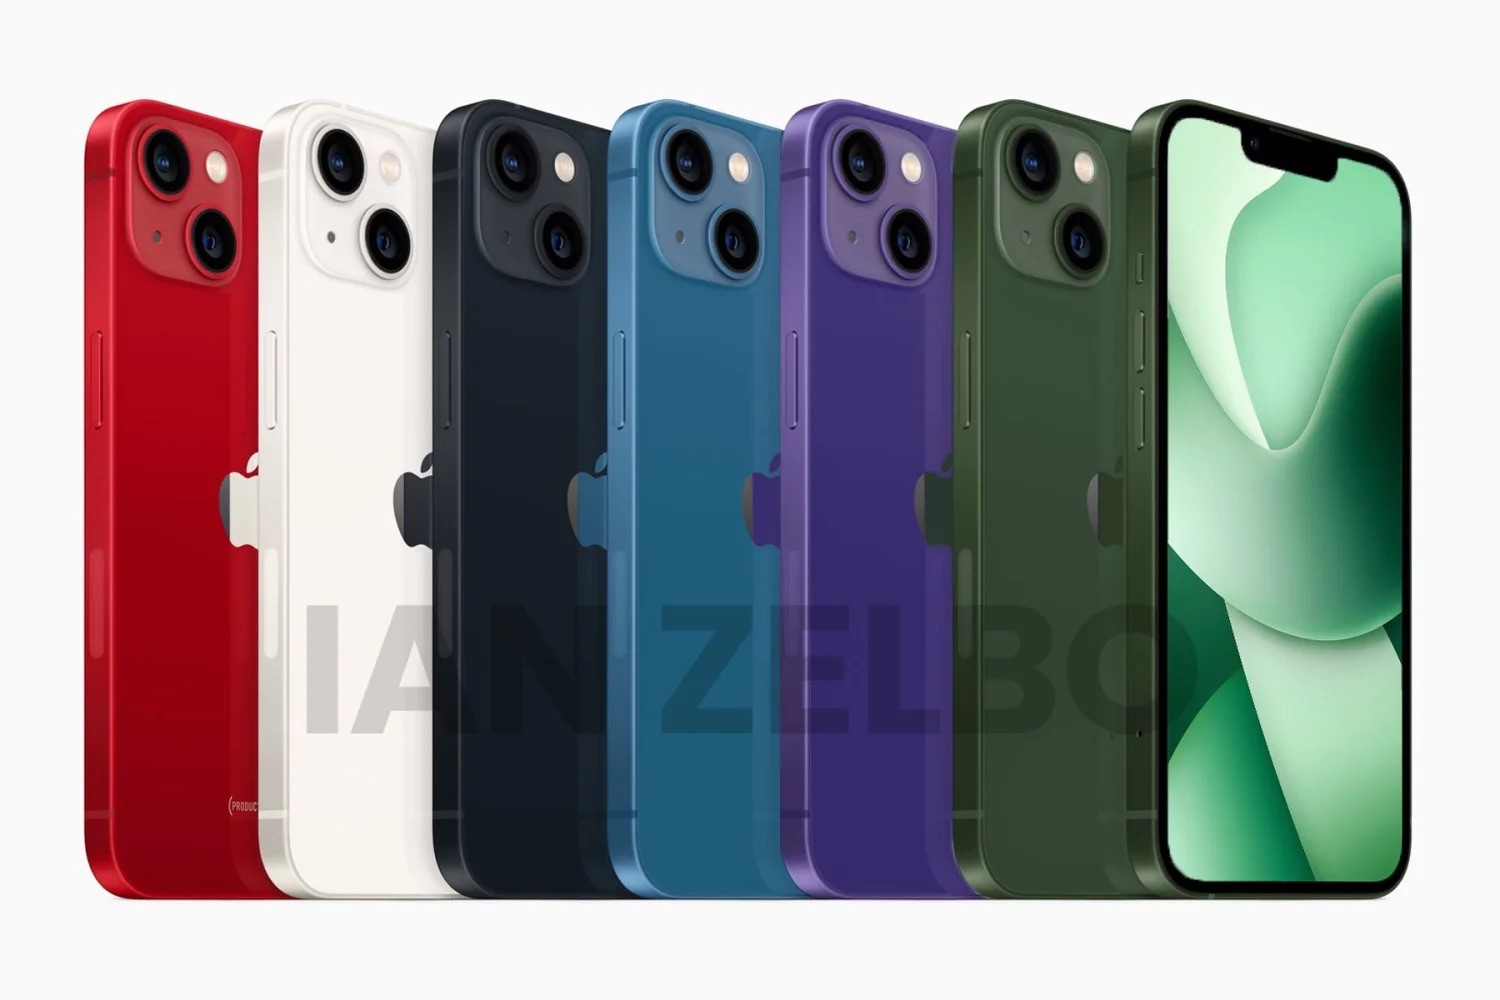 W jakich kolorach pojawią się nowe iPhone 14 i 14 Pro? ciekawostki kolory iPhone 14 Pro, kolory iphone 14, iPhone 14 Pro, iPhone 14  Za tydzień Apple zaprezentuje światu nowe iPhone’y serii 14, a dziś grafik Ian Zelbo udostępnił  rendery pokazujące wygląd i kolory przyszłych smartfonów. ip kolory